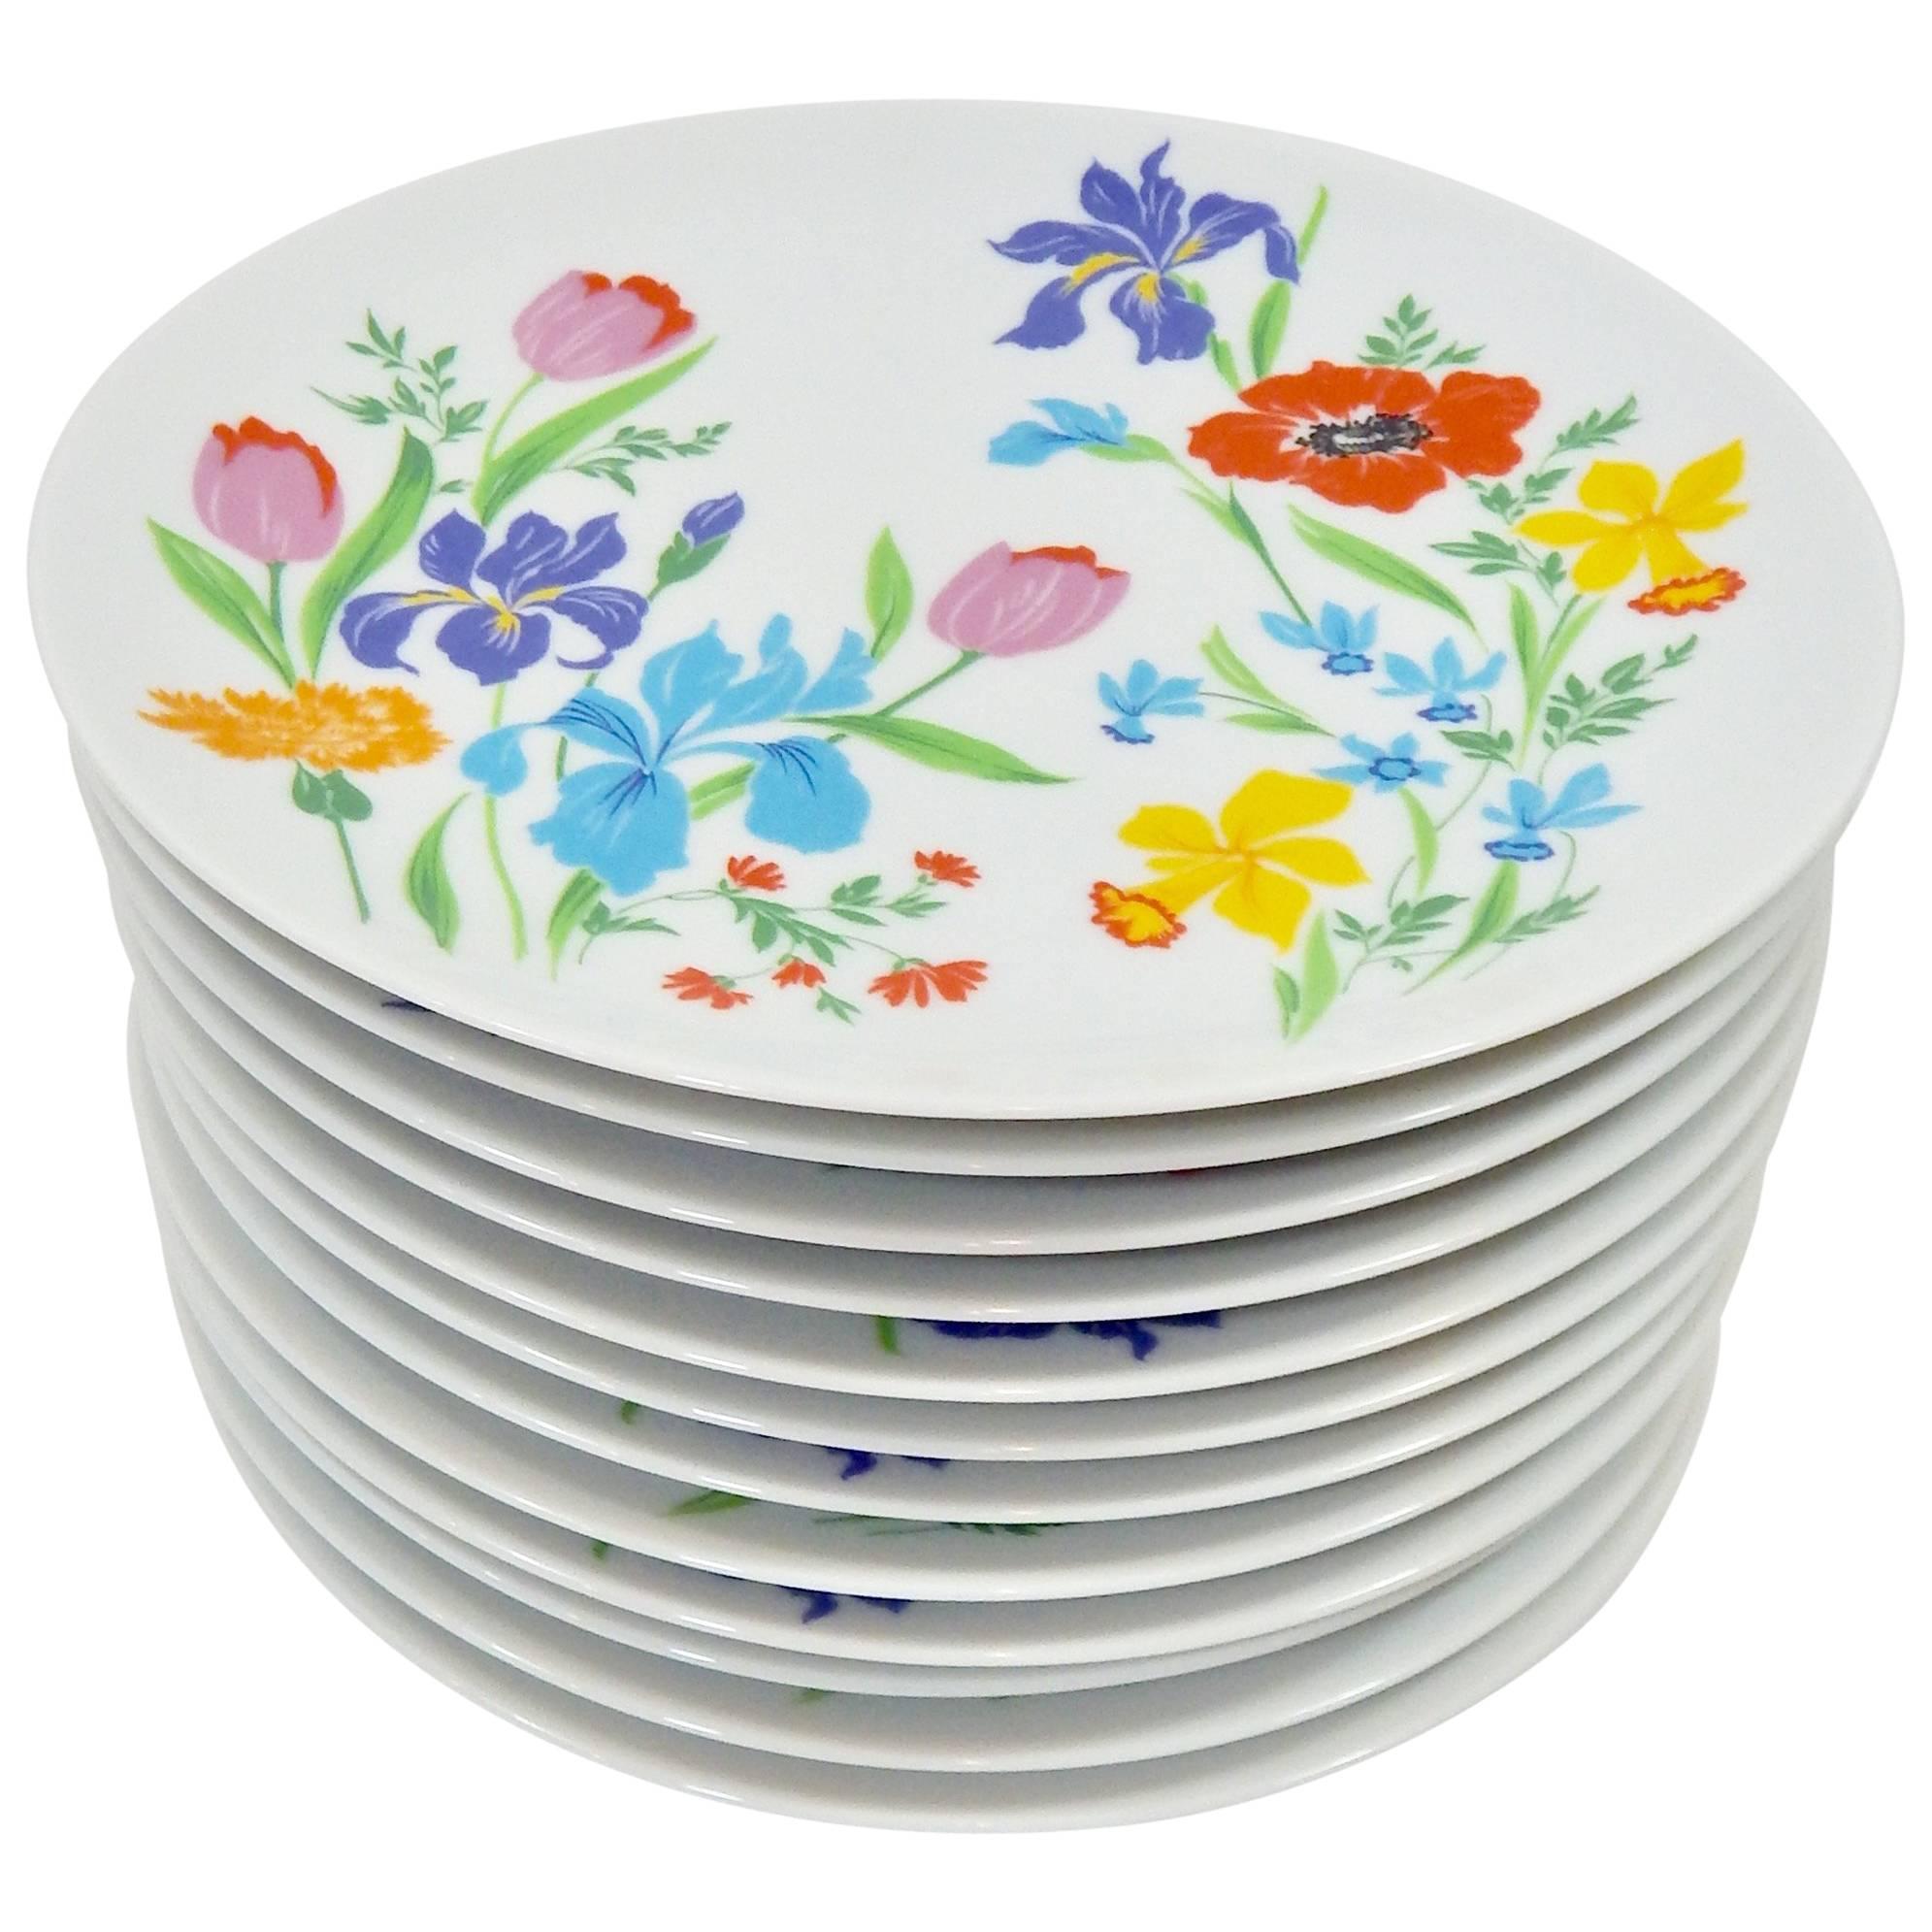 Heinrich, Germany Porcelain Serverware / Plates Set of 12  For Sale